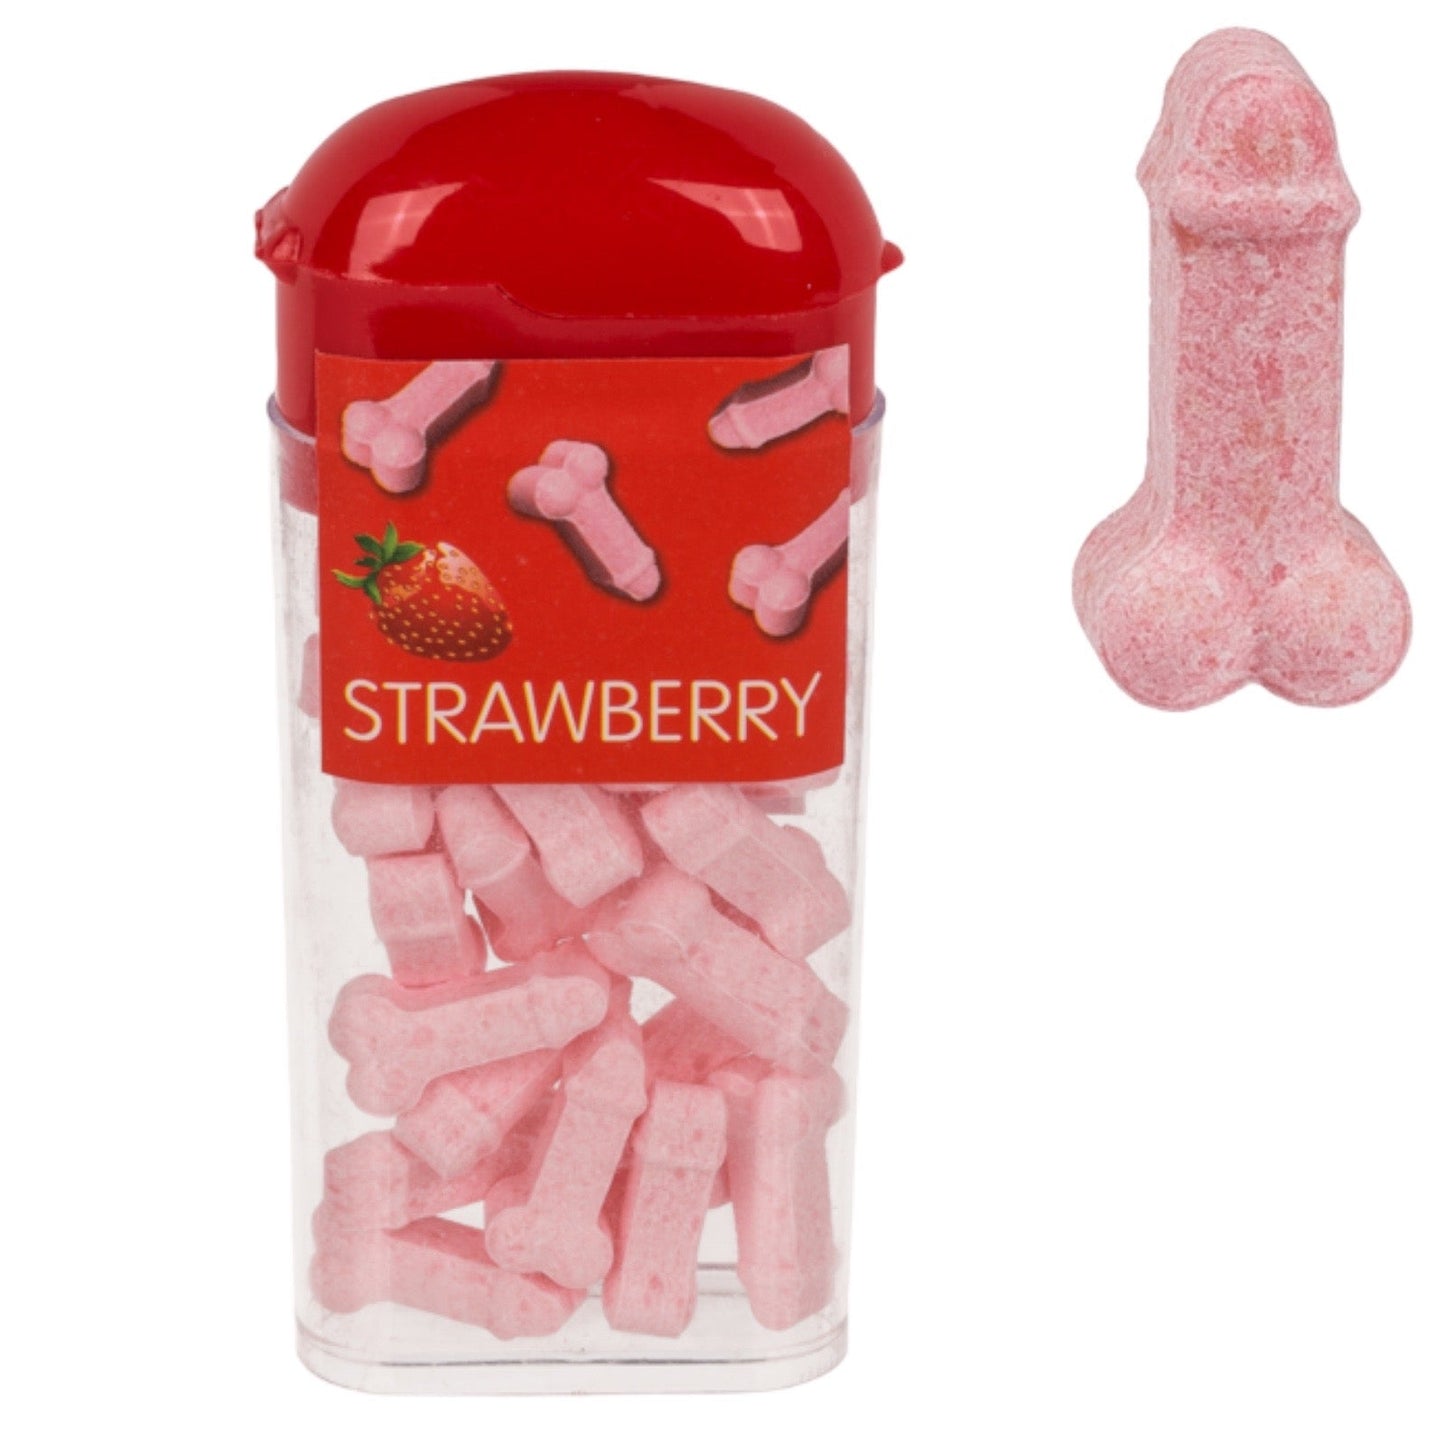 Kinky Pleasure - OB053 - Tiktak Penis Willy's - 4 Flavour - Strawberry, Banana, Mint, Cherry - 18 gr